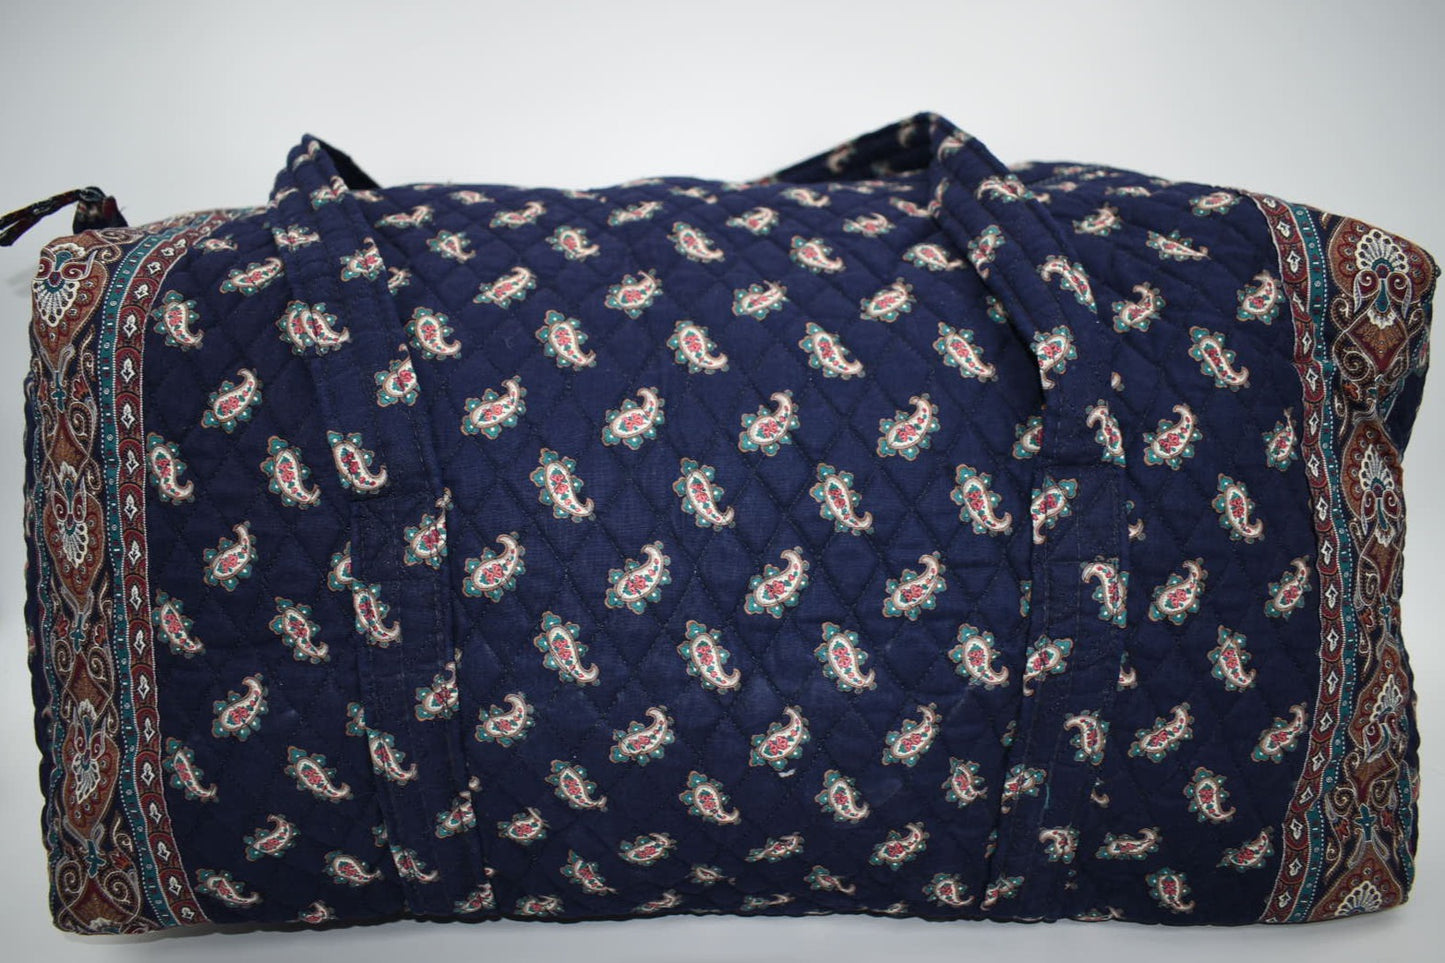 Vintage Vera Bradley XL Duffel Bag in "Navy -1991" Pattern